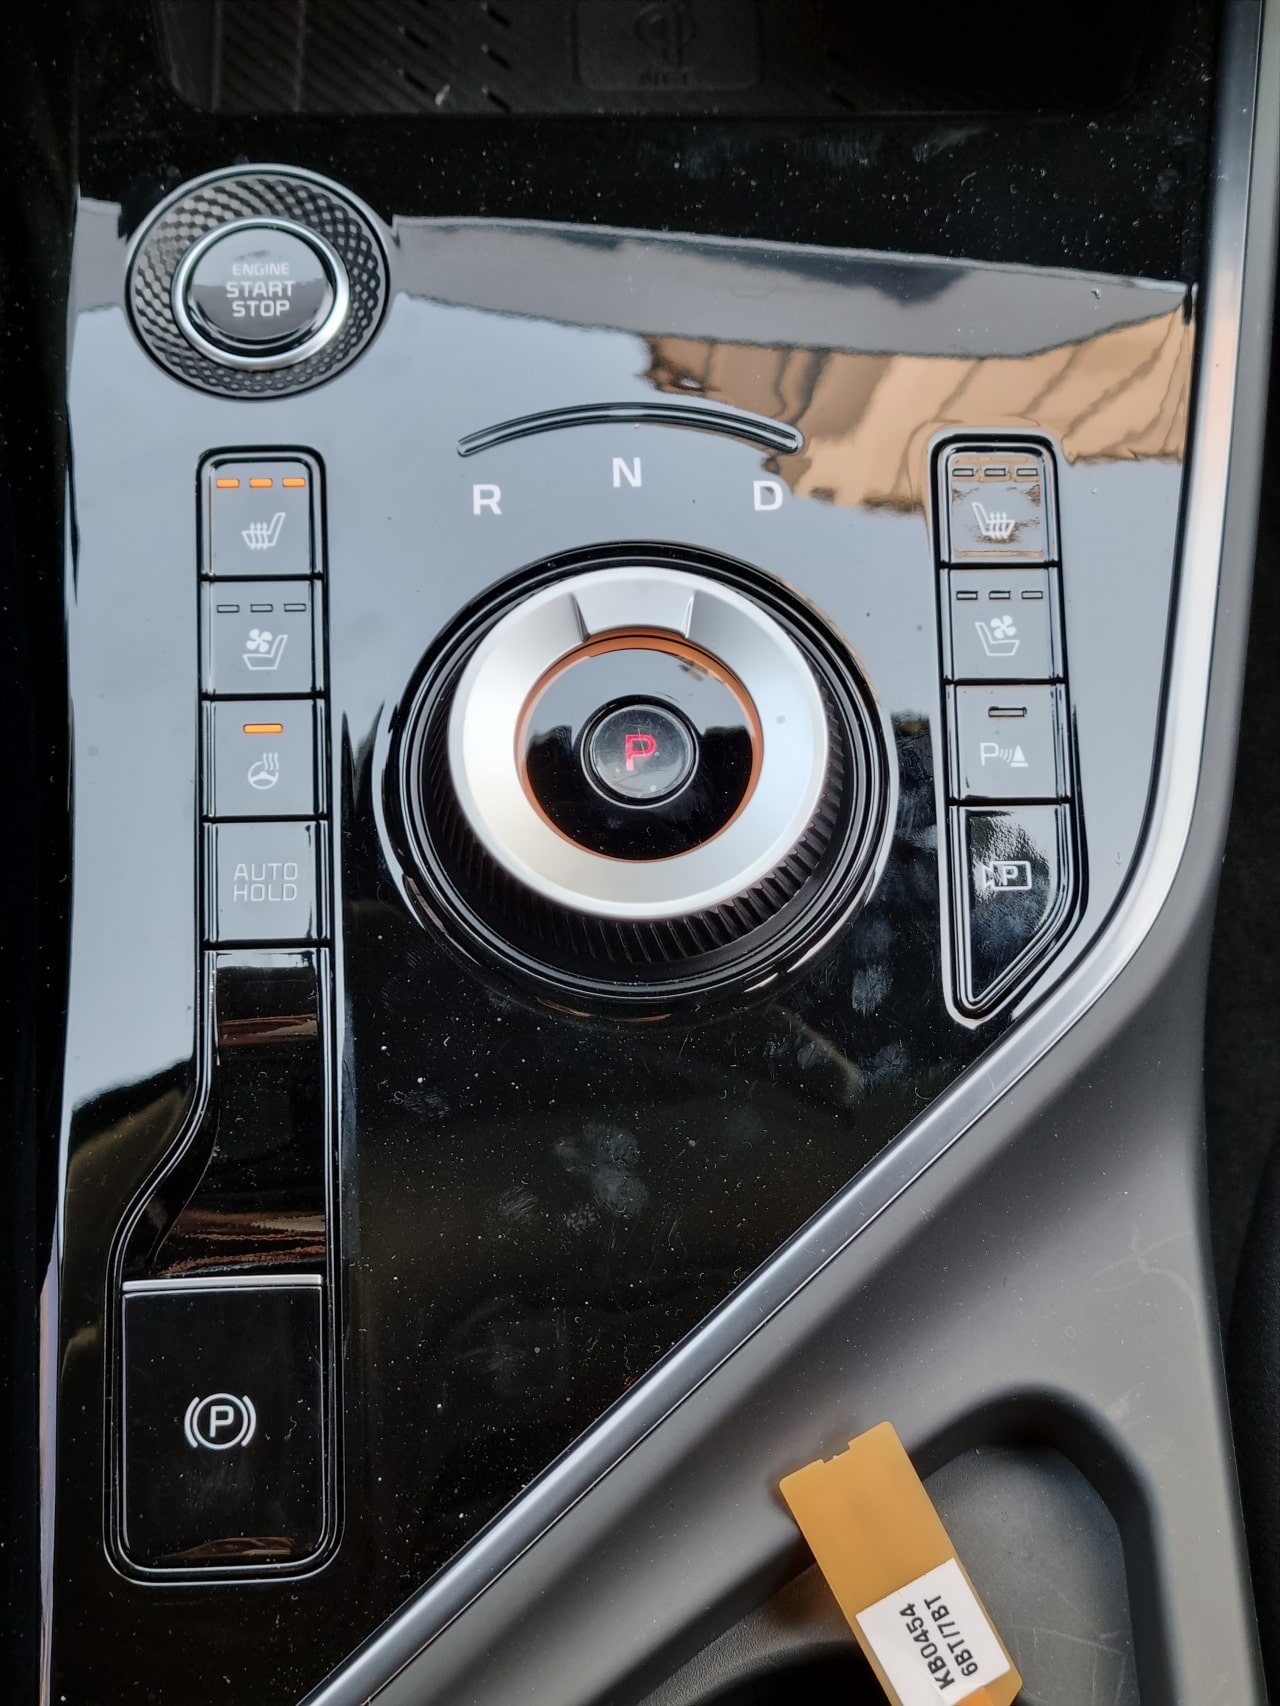 신형 니로의 시동 버튼&#44; 전자식 다이얼 변속 레버&#44; 버튼을 촬영한 모습입니다.